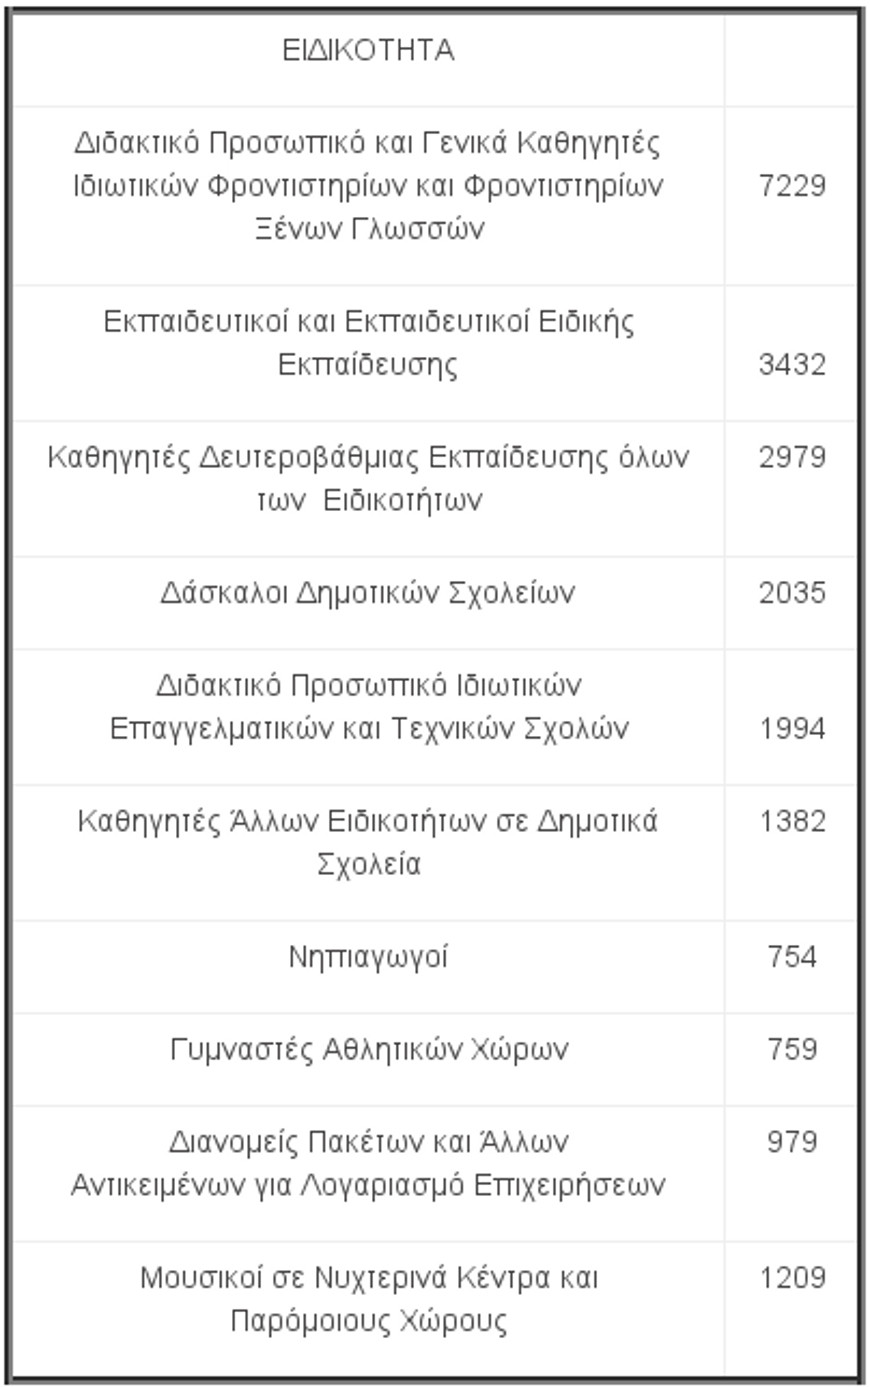 Ποιες ειδικότητες είναι περιζήτητες στην Ελλάδα -Ποιους προσλαμβάνουν οι εργοδότες [πίνακες] | iefimerida.gr 0